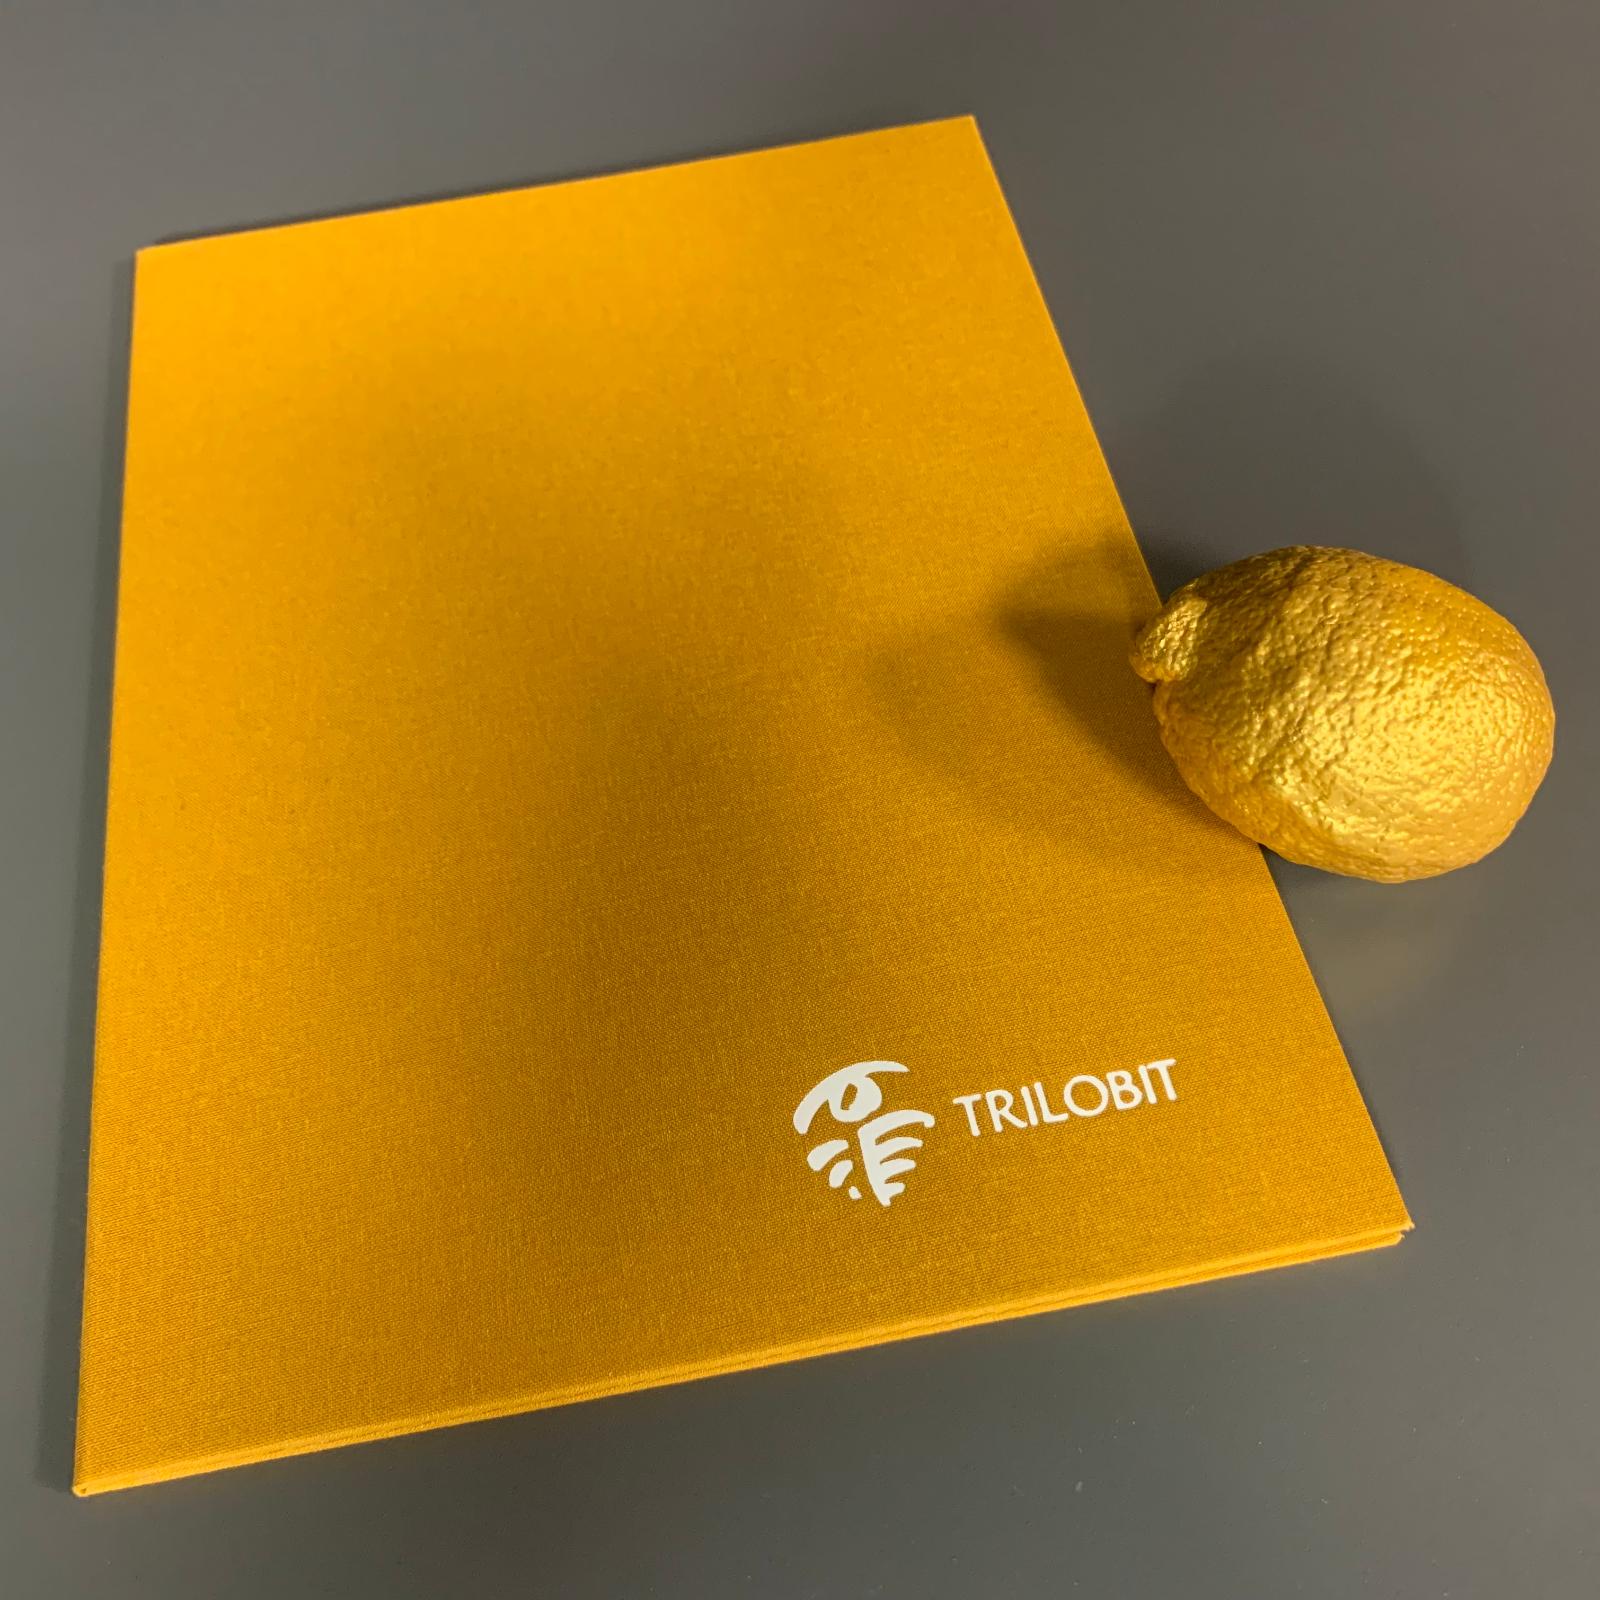 Trilobit - Zlatý citron 2020 Luboši Xaveru Veselému - Sběratelství